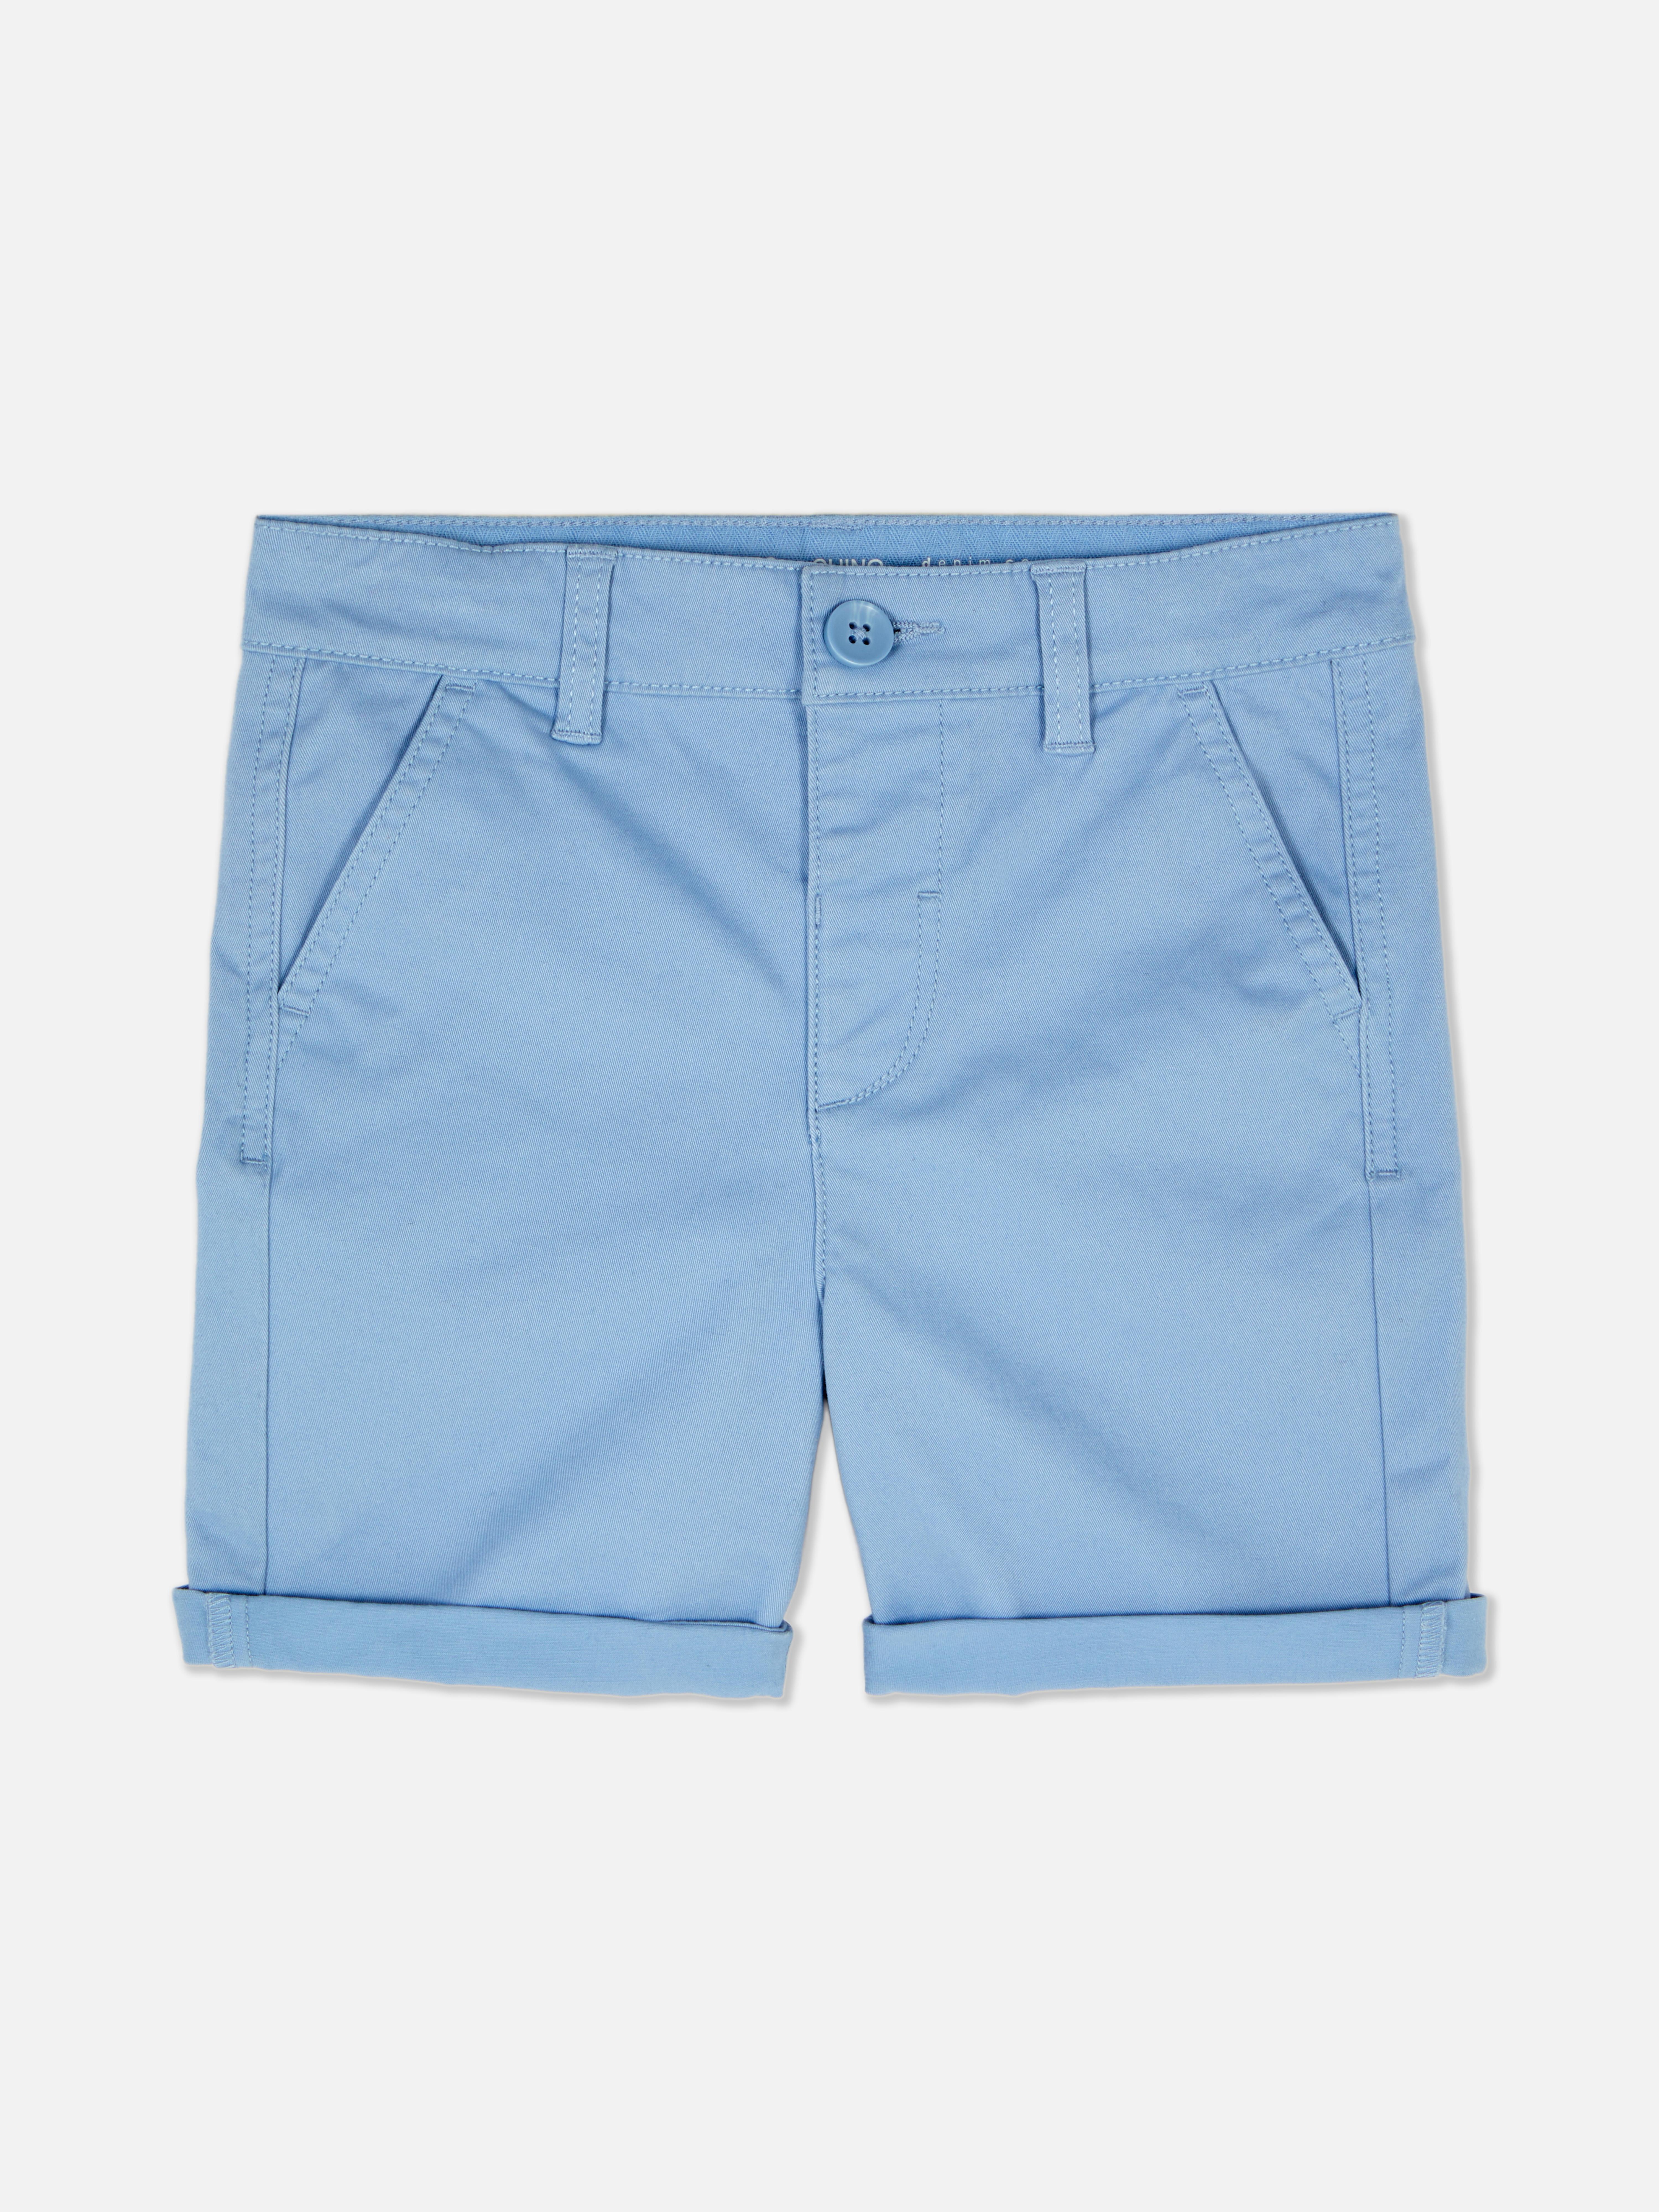 Chino-Shorts mit Umschlag